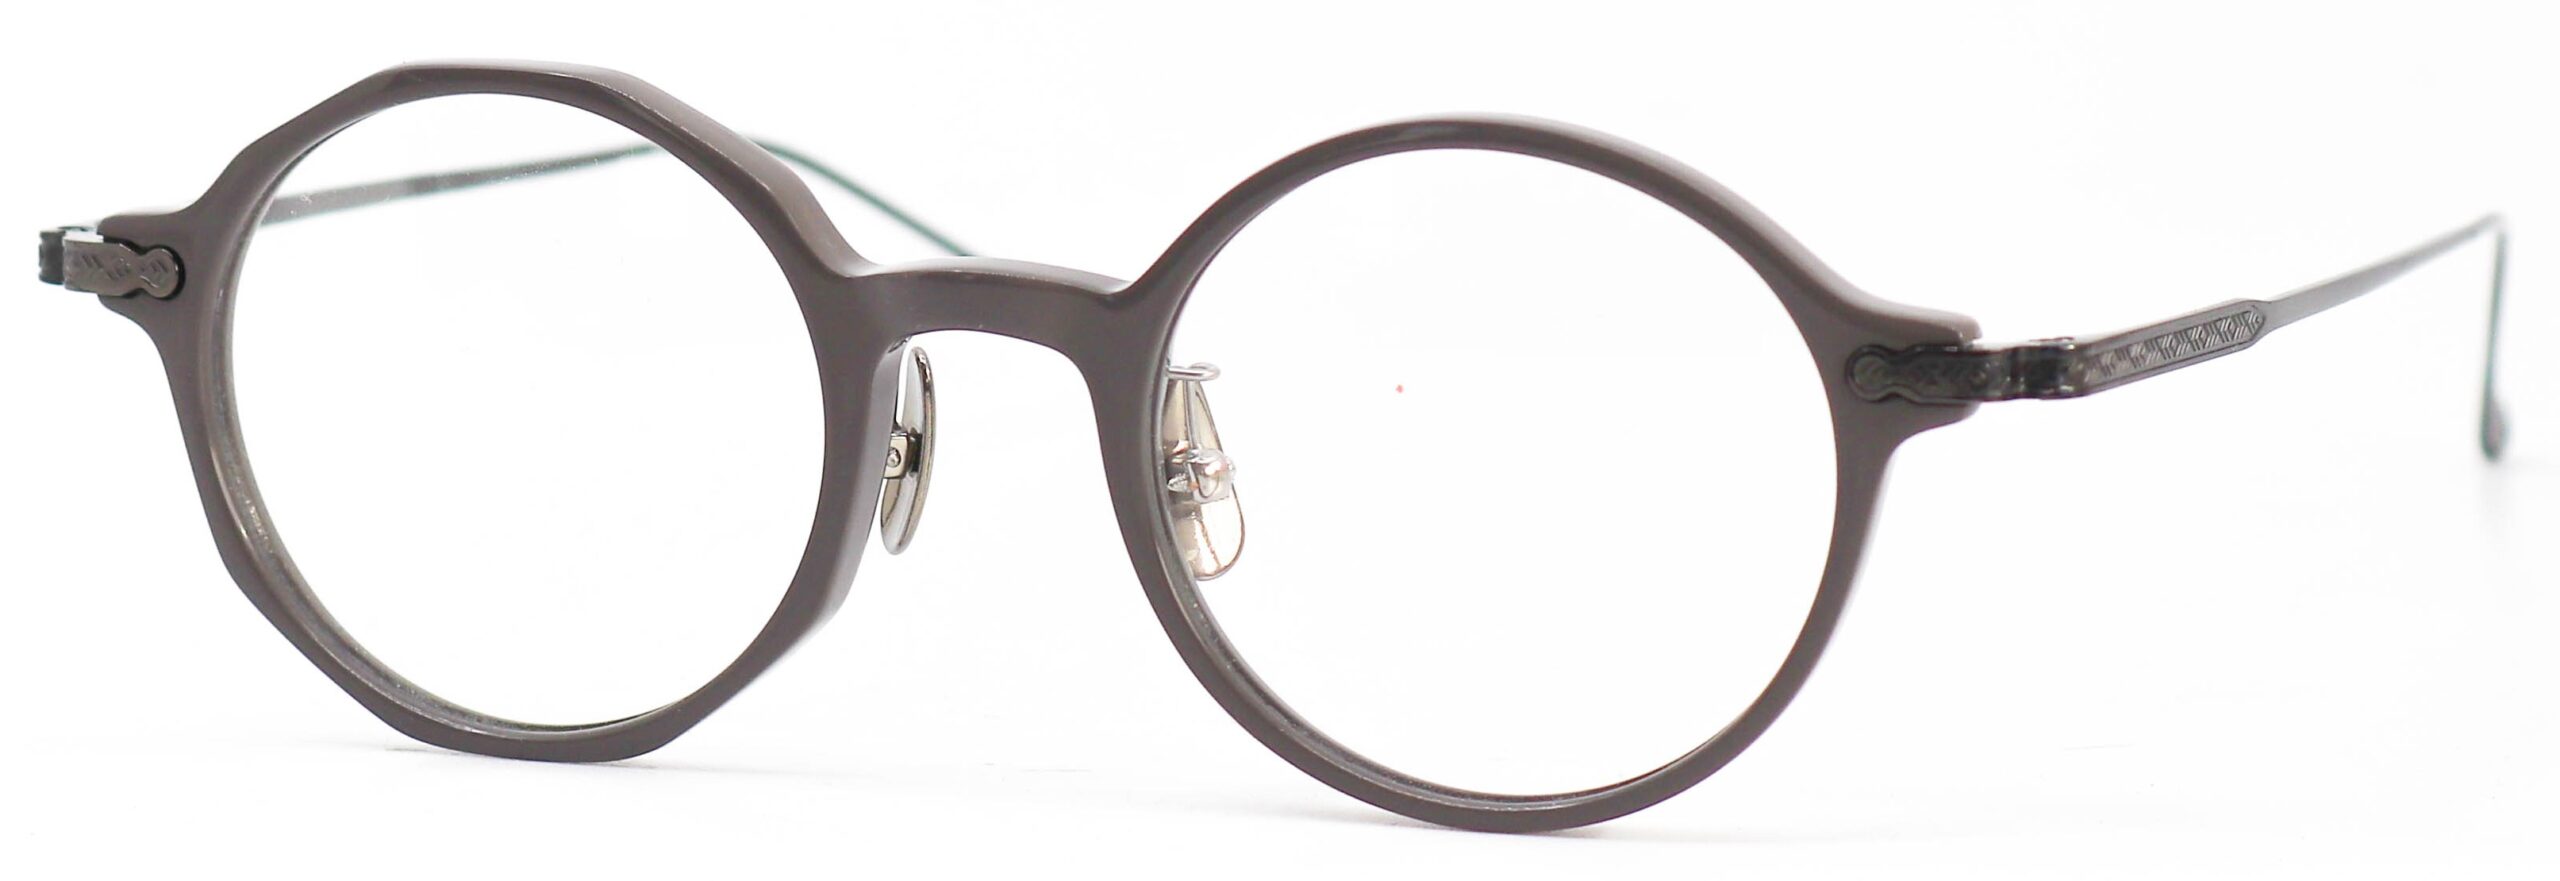 眼鏡のカラータイプC-5 Gray/DarkGray